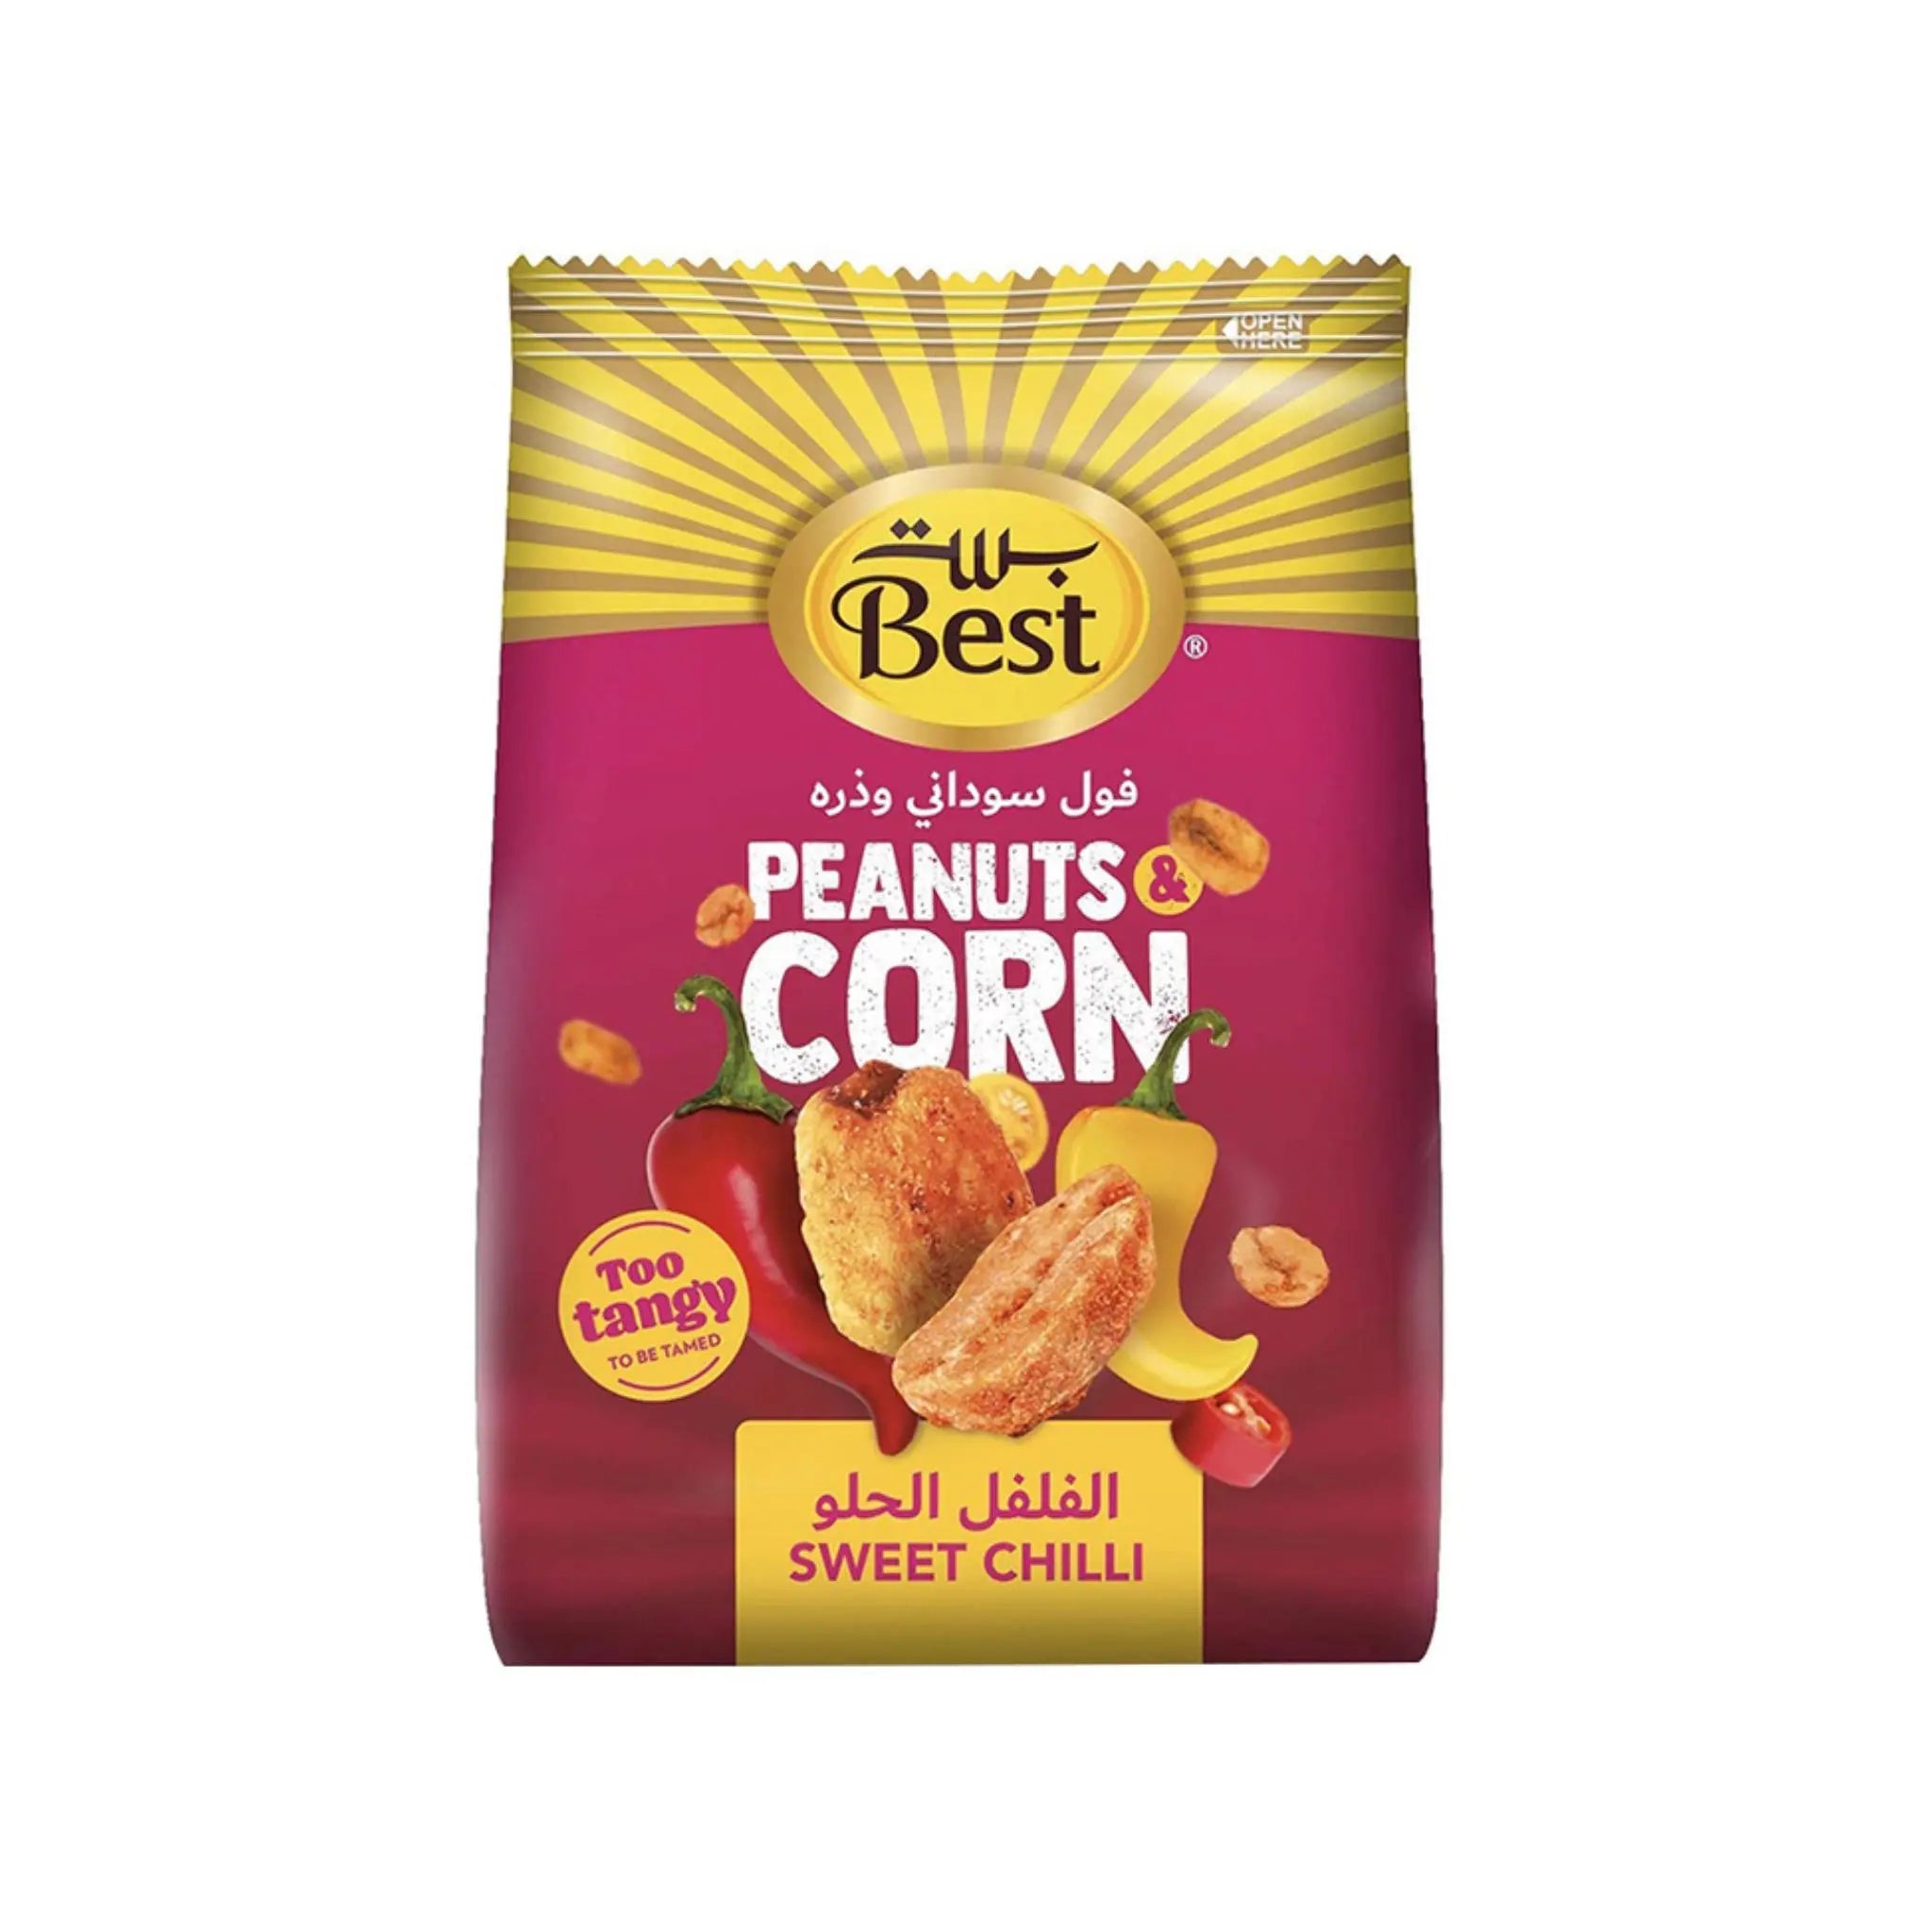 Best Peanuts & Corn Sweet Chilli - 24x150g (1 carton) - Marino.AE